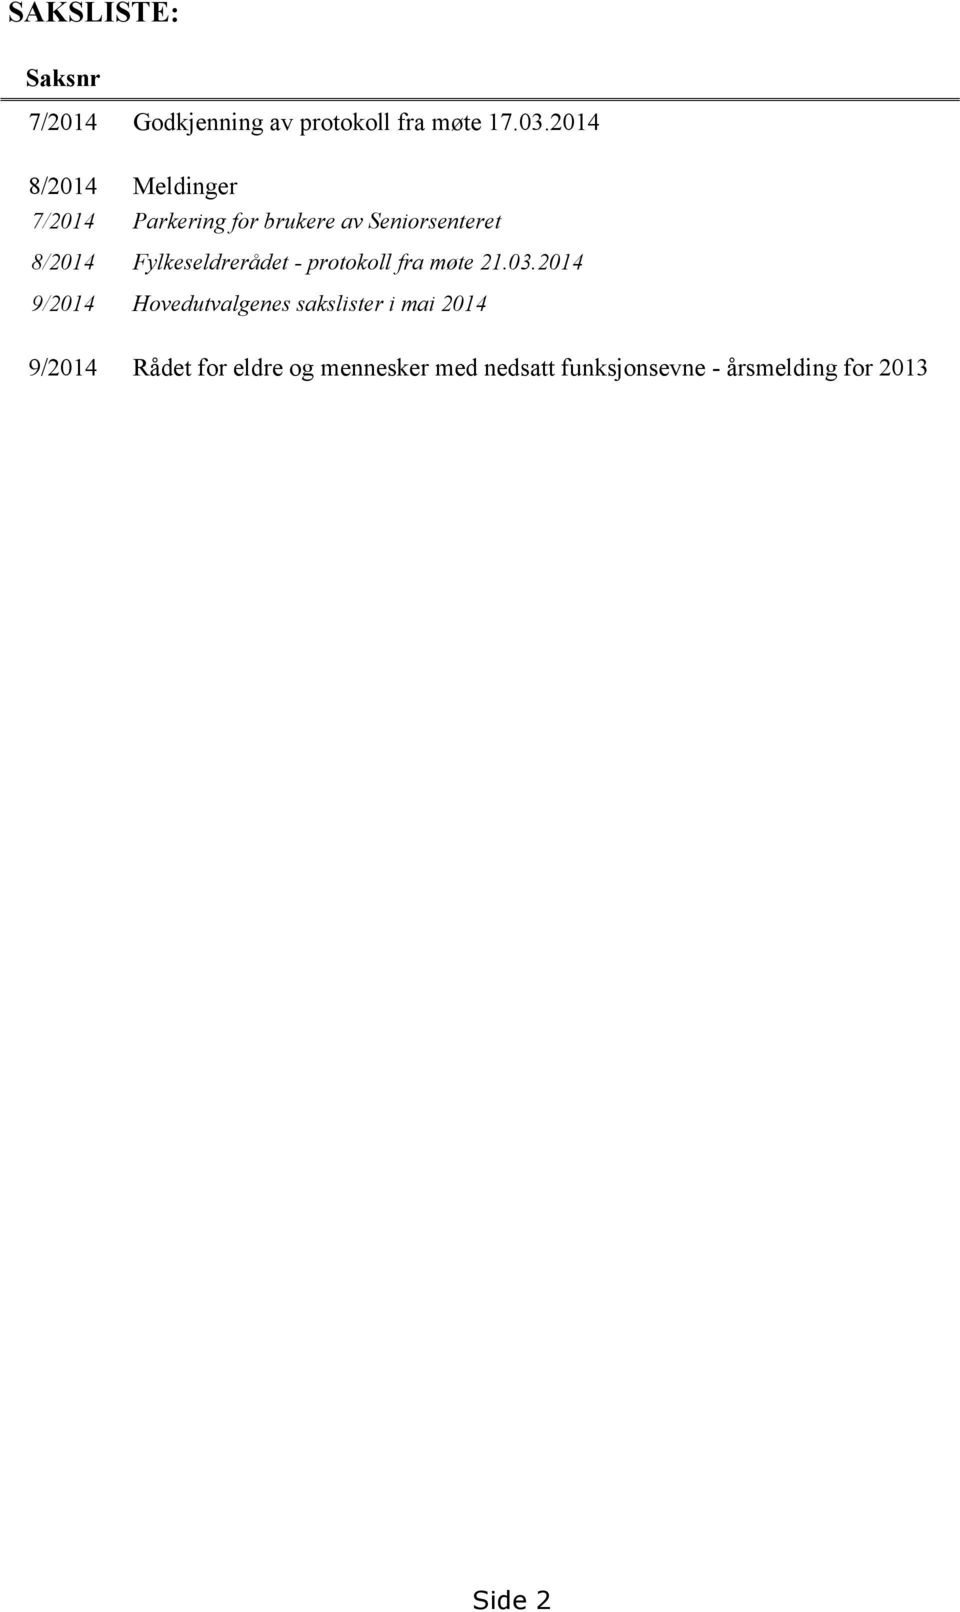 Fylkeseldrerådet - protokoll fra møte 21.03.